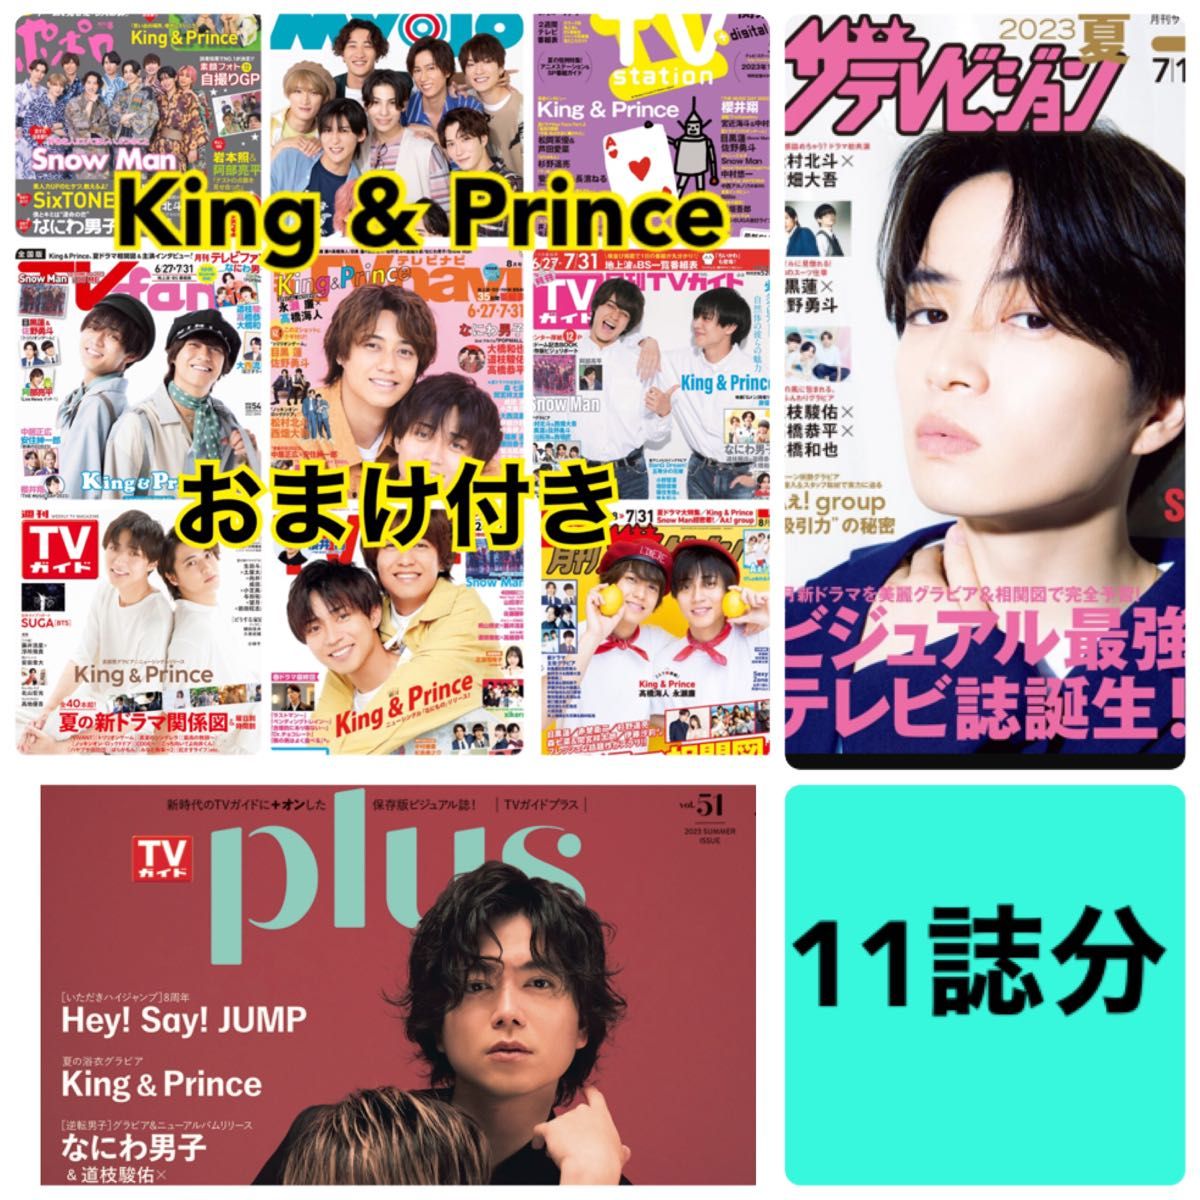 King&Prince TVfan TVnavi ザテレビジョン 切り抜き | www.noah